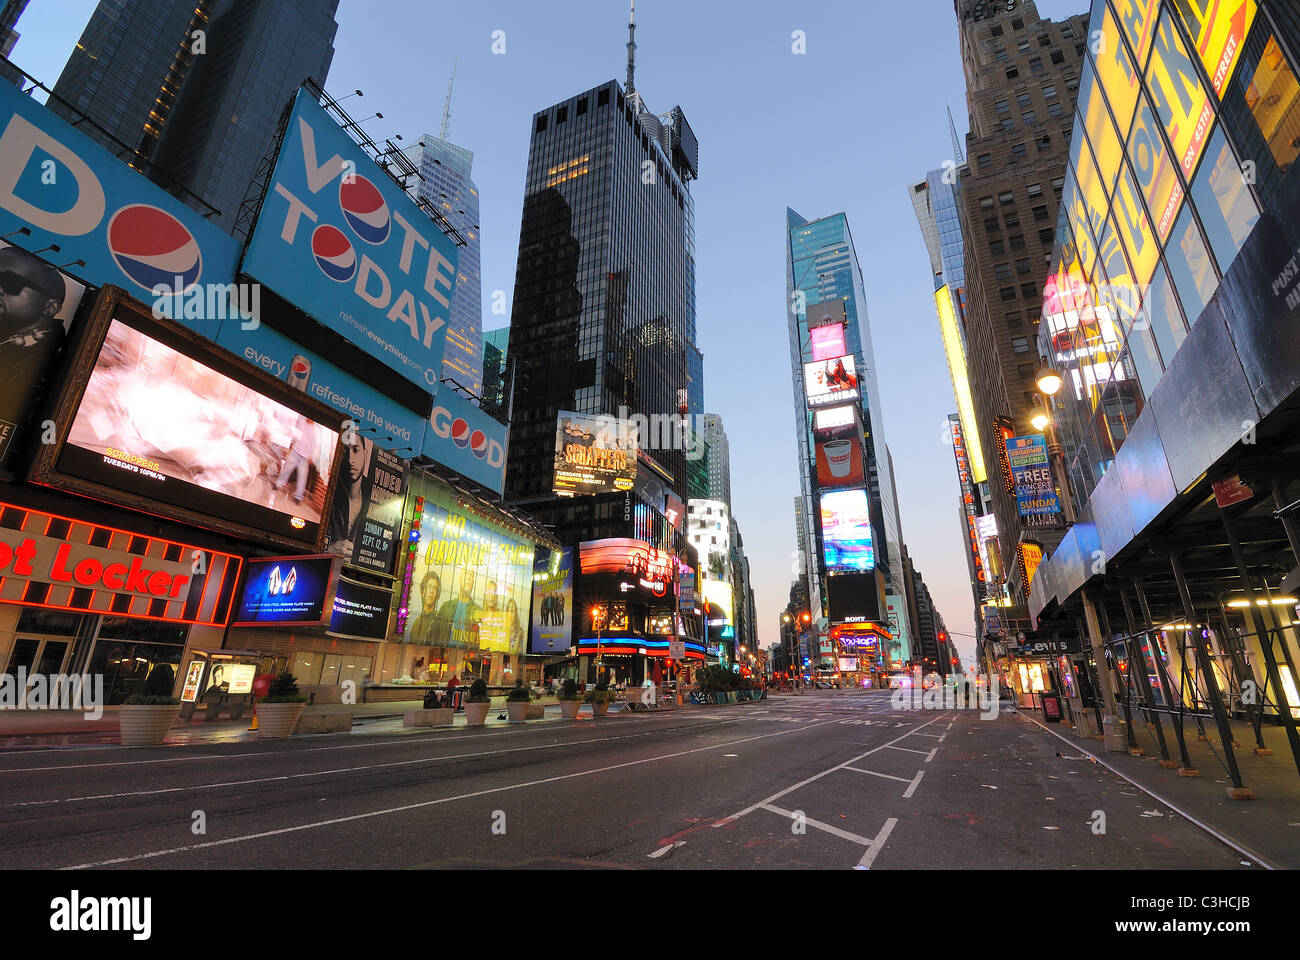 Los escaparates y los anuncios en un inusualmente vacía la plaza Times Square de Nueva York al amanecer. Foto de stock